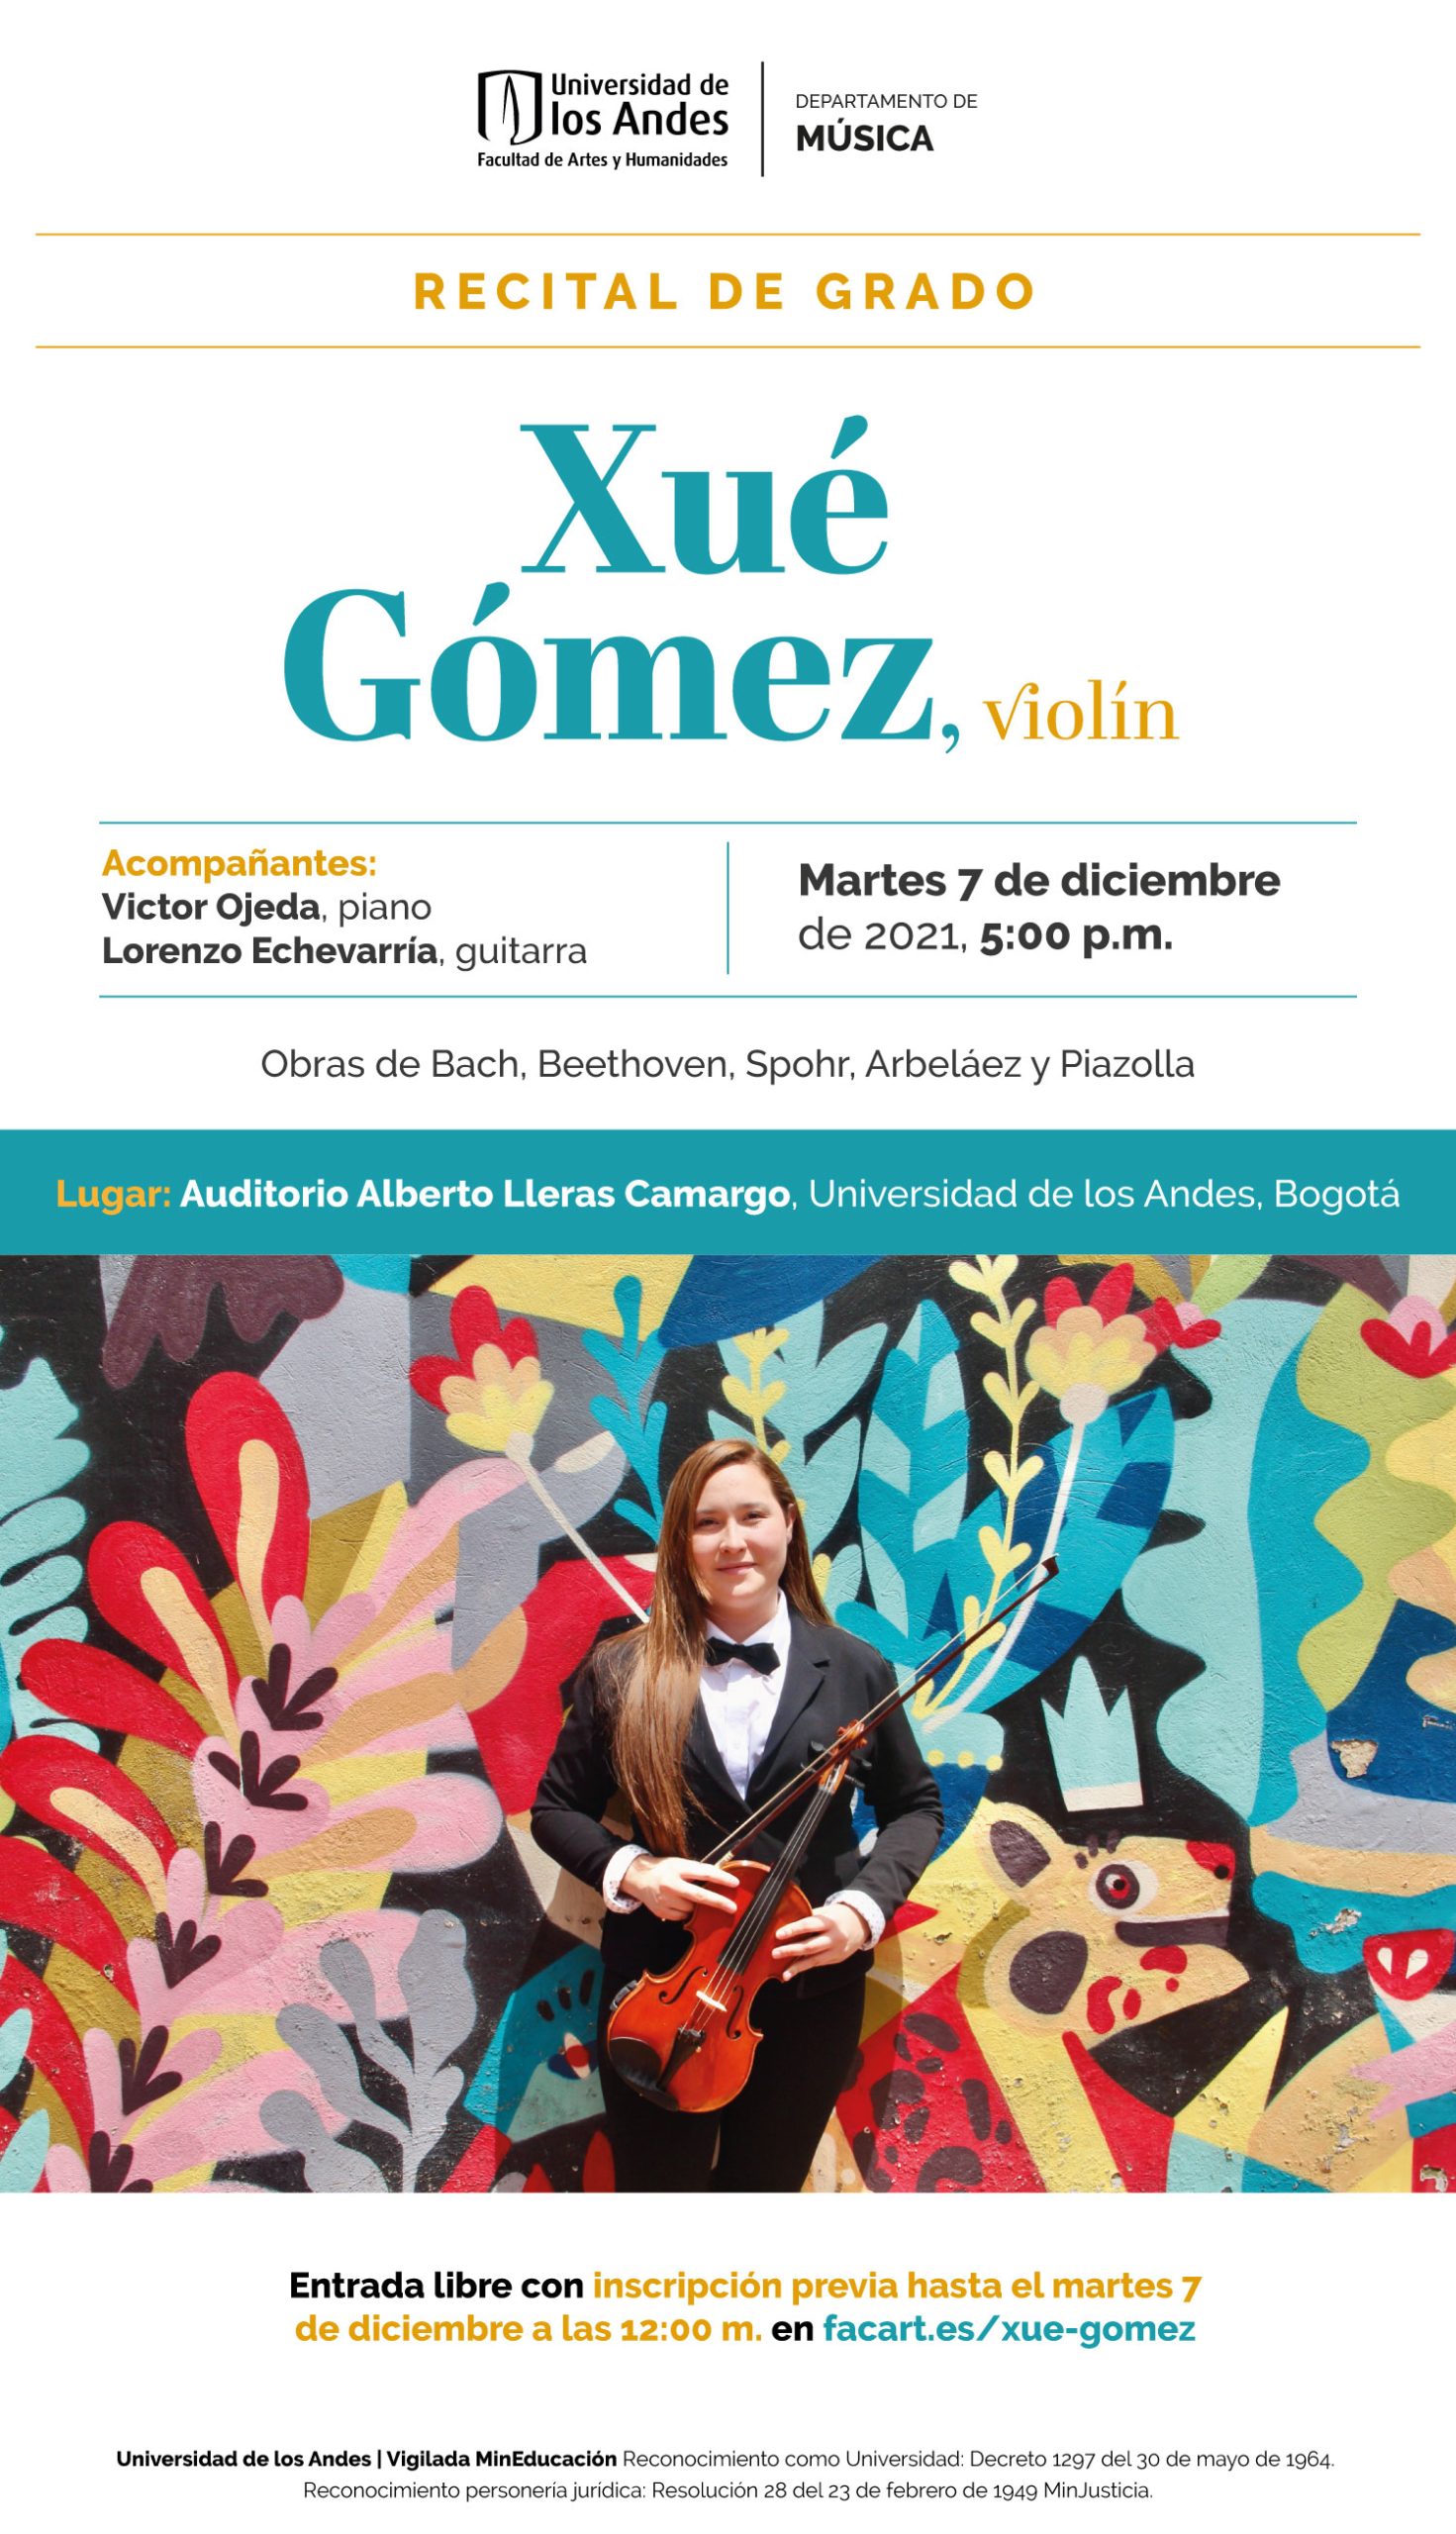 Recital de grado: Xué Gómez, violín